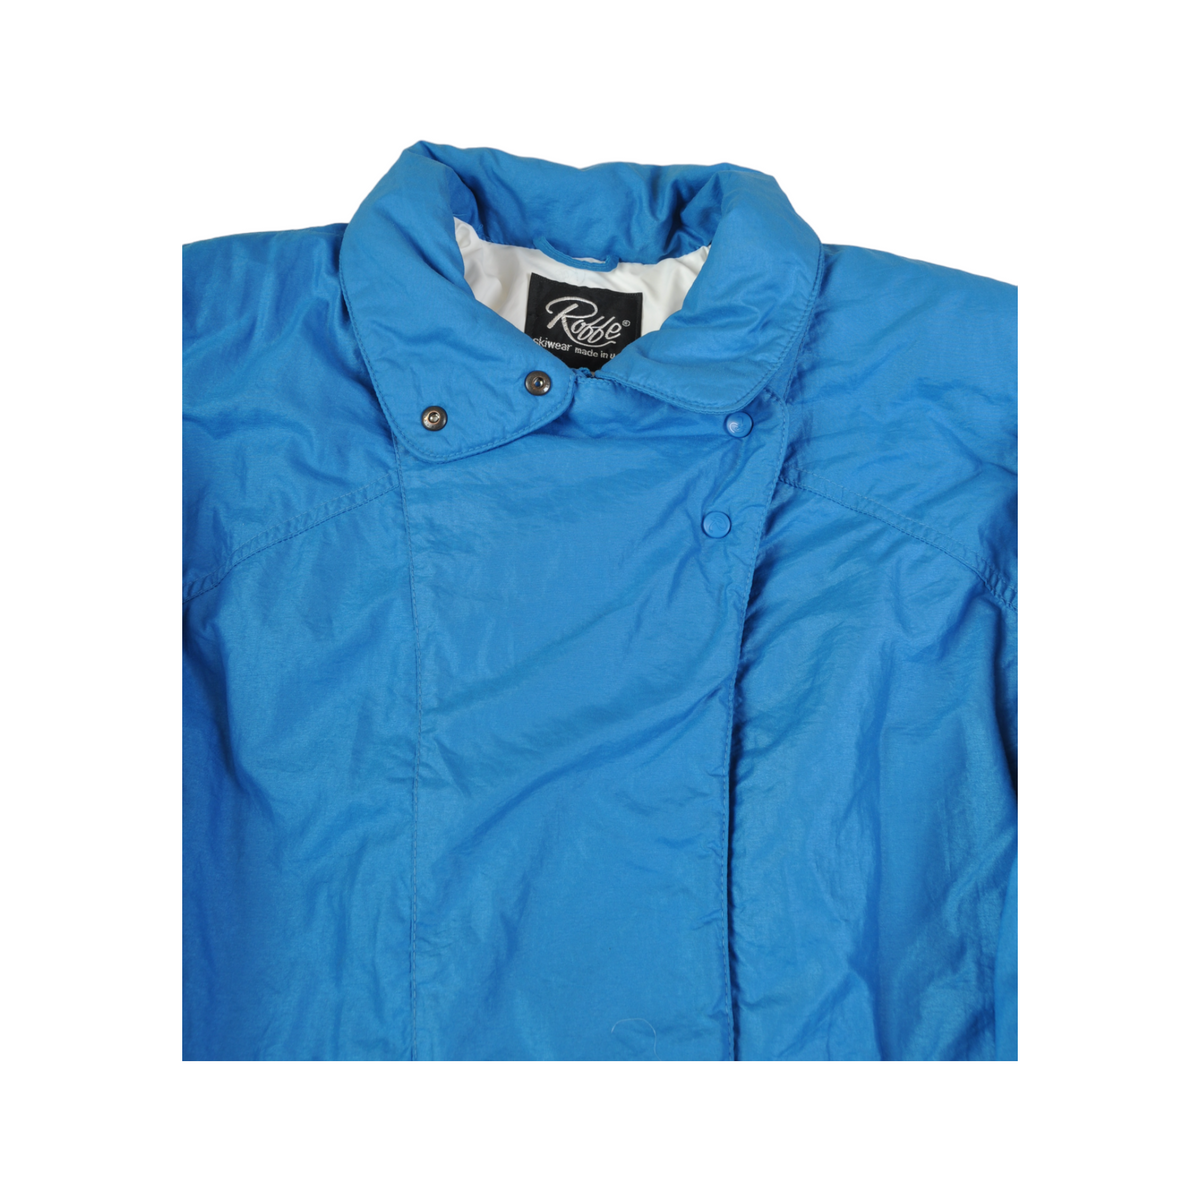 Vintage Ski Jacket Thinsulate Blue Ladies Medium - Cloak Vintage